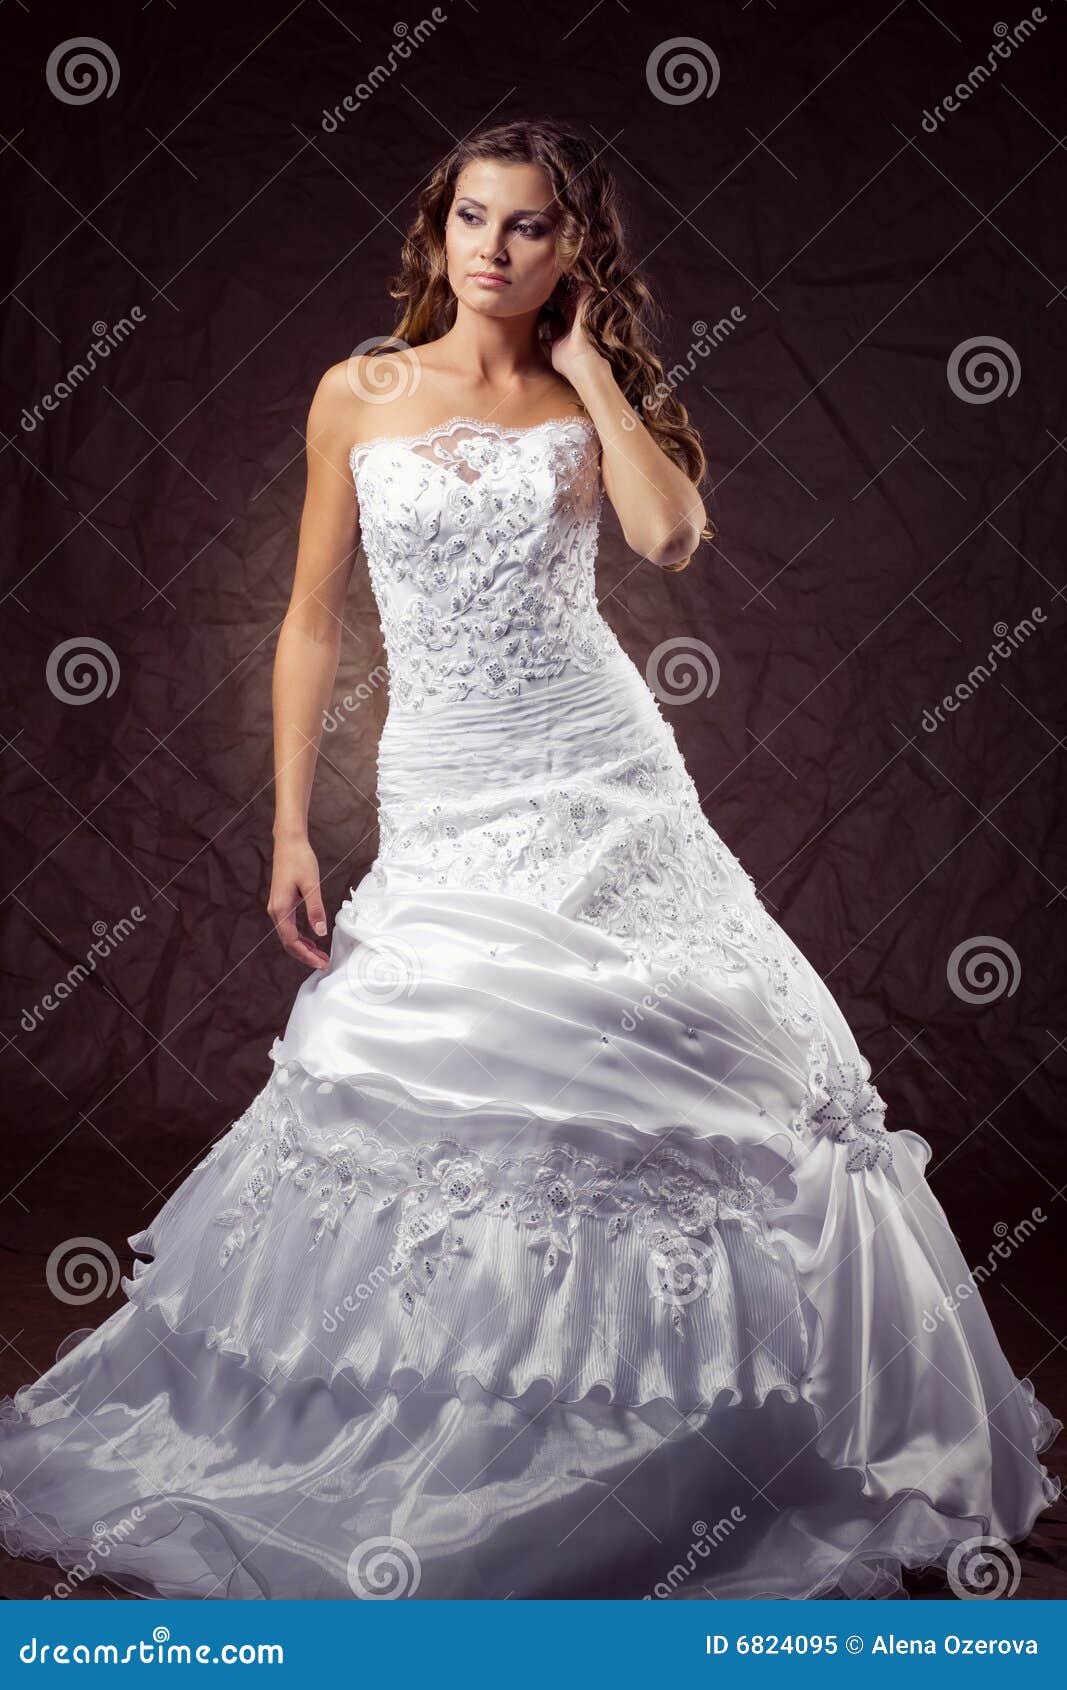 Fashion Model Wearing Wedding Dress Stock Image - Image 